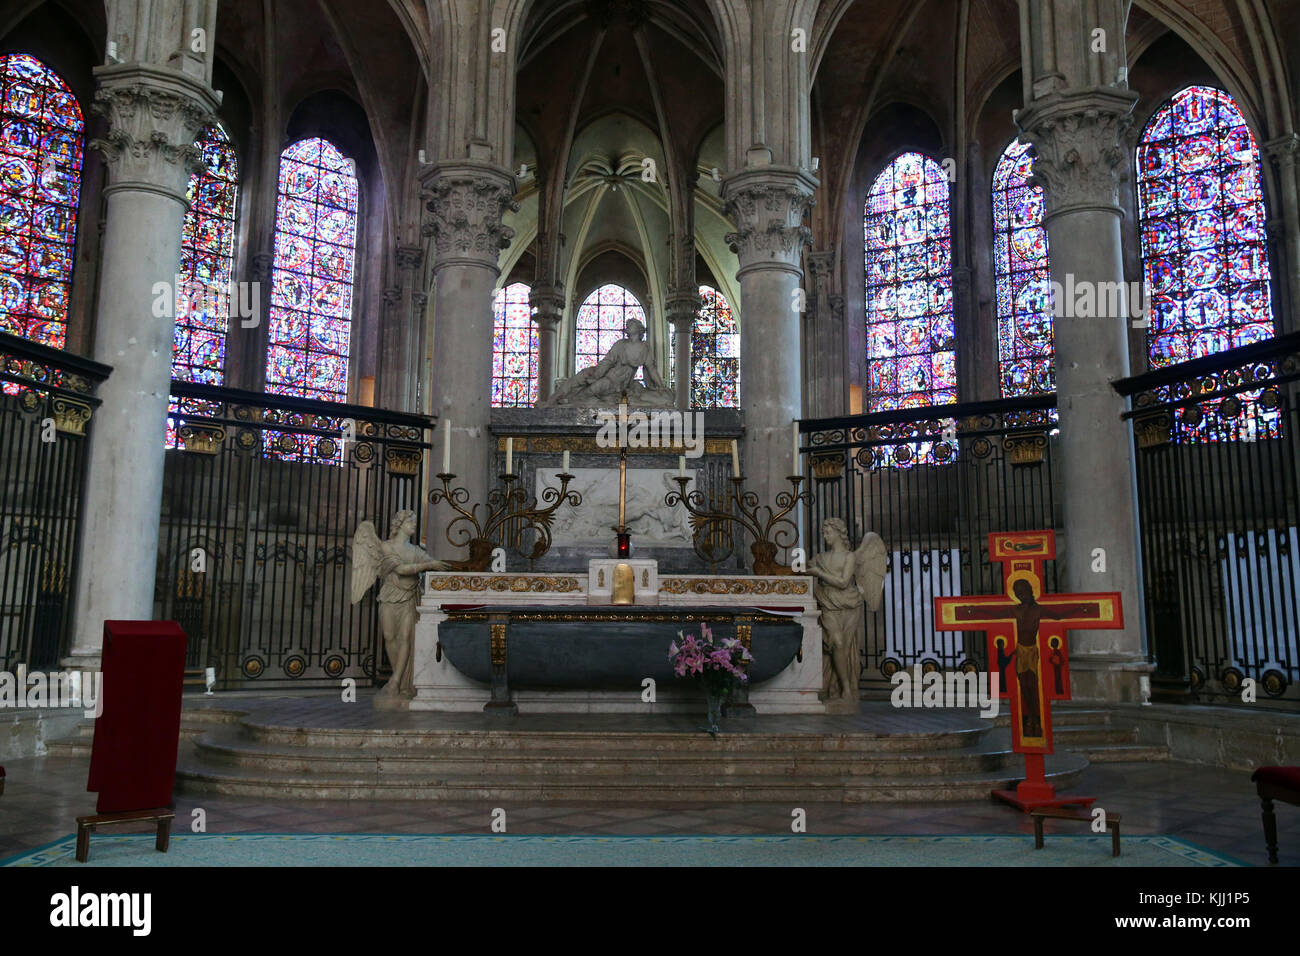 Der Kathedrale von Auxerre, dem heiligen Stephan geweiht. Chor und Altar. Frankreich. Stockfoto